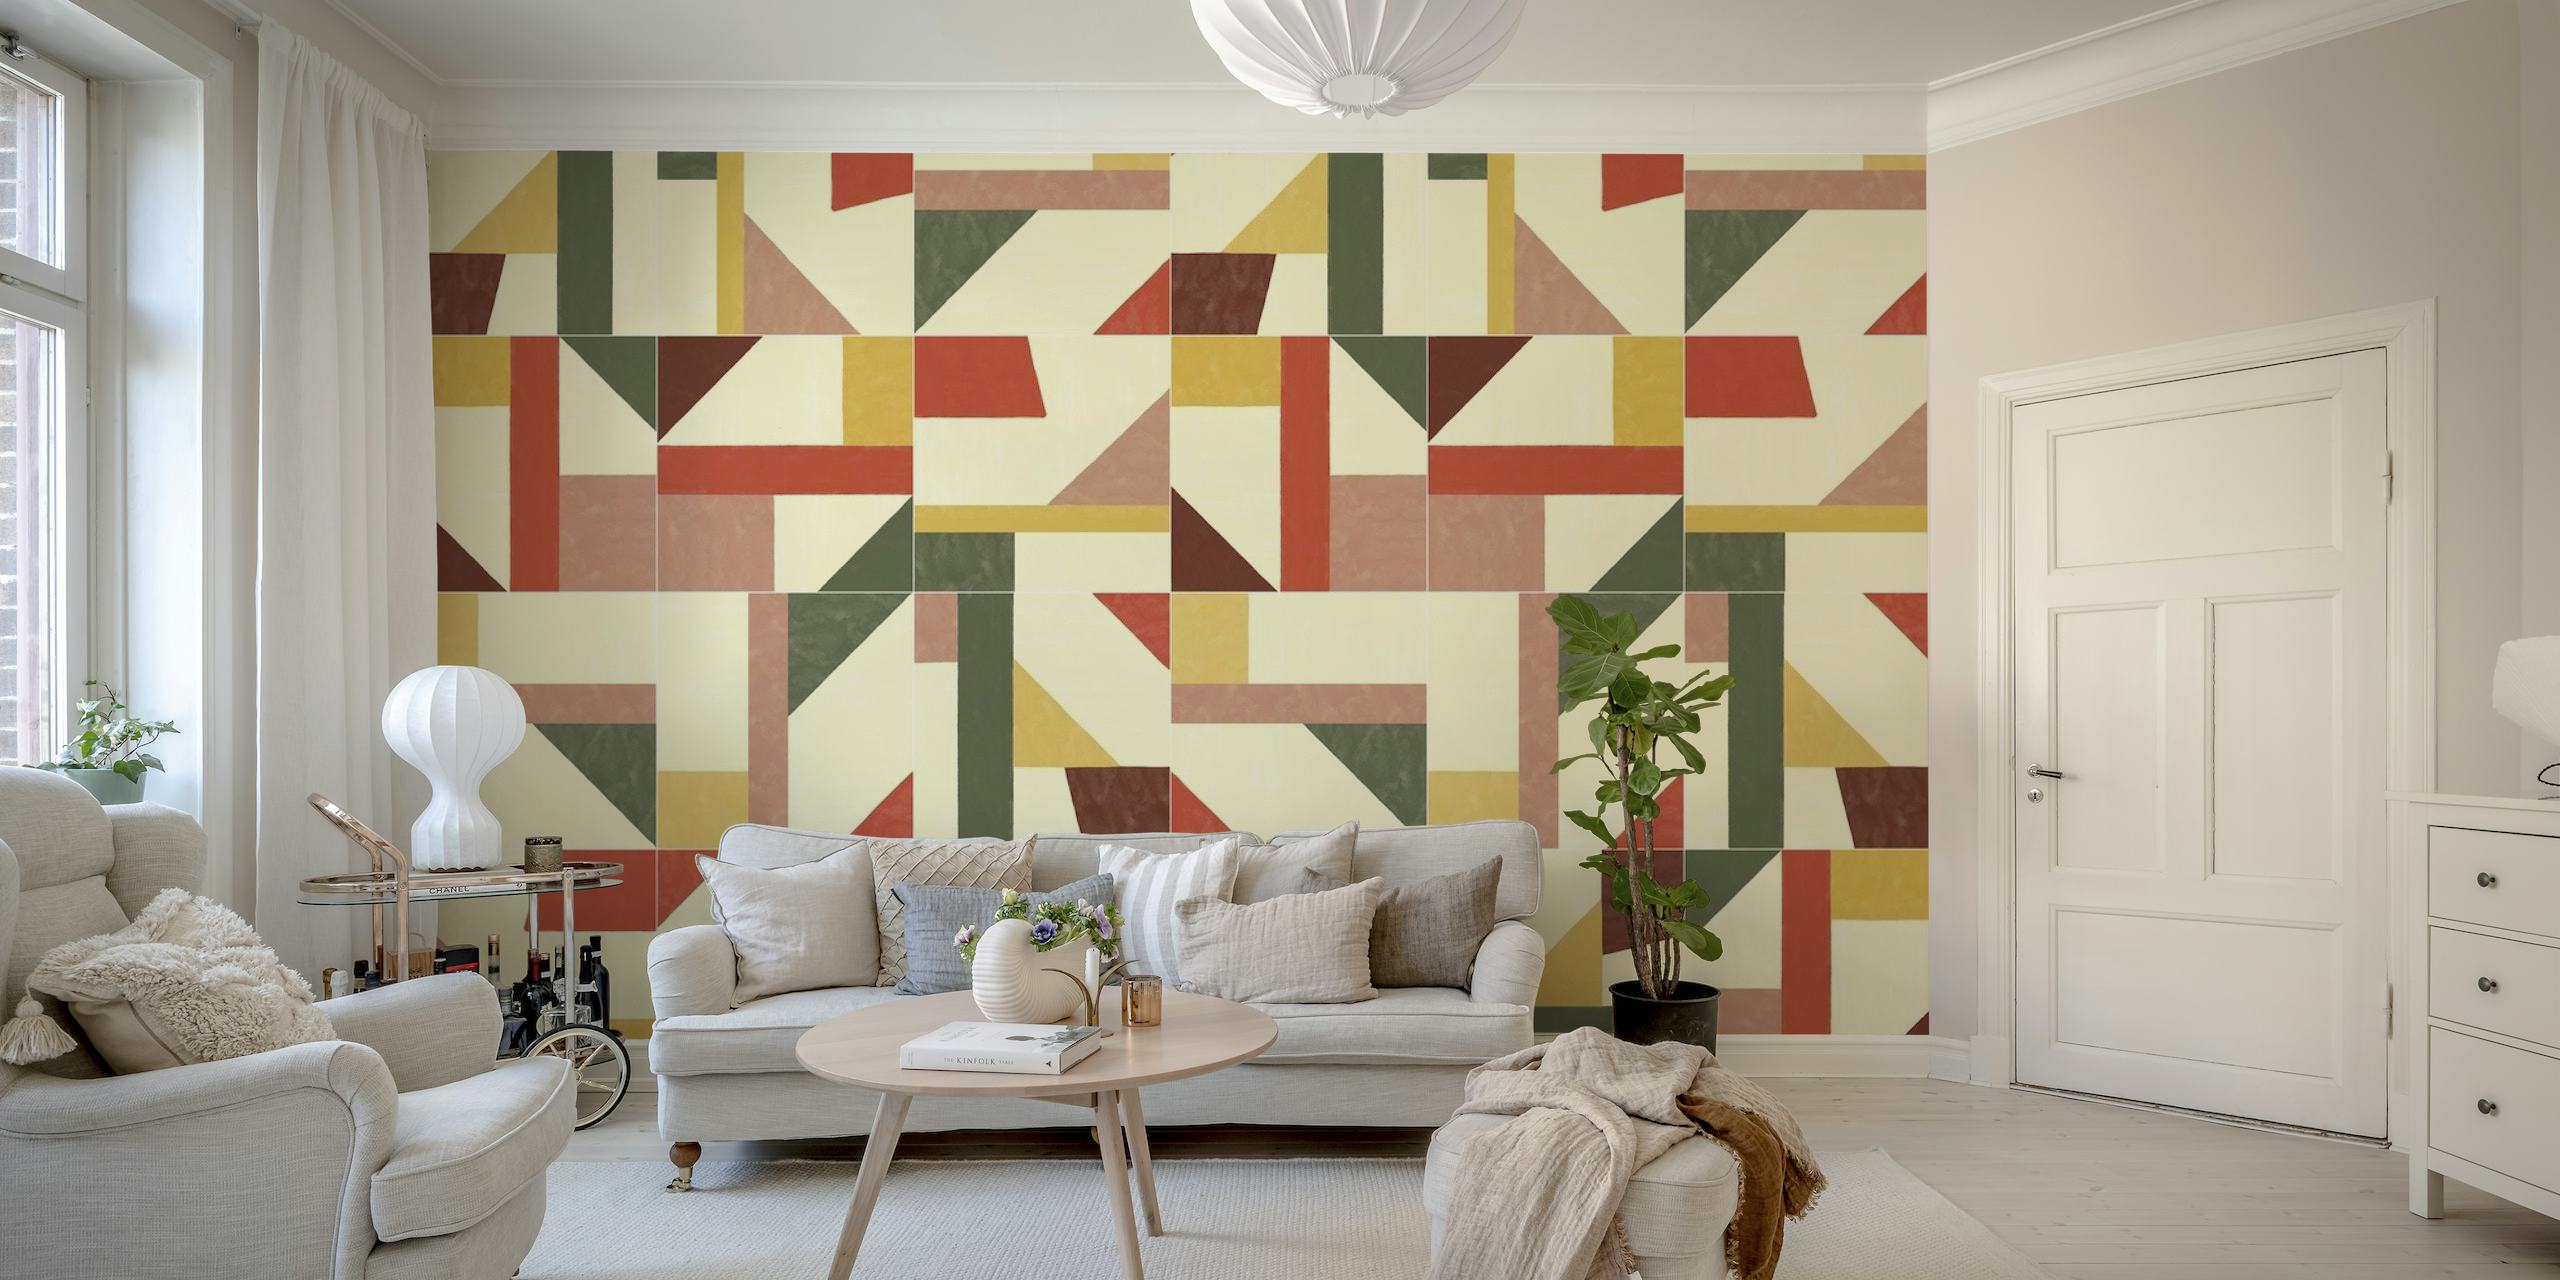 Tangram Wall Tiles Two tapet